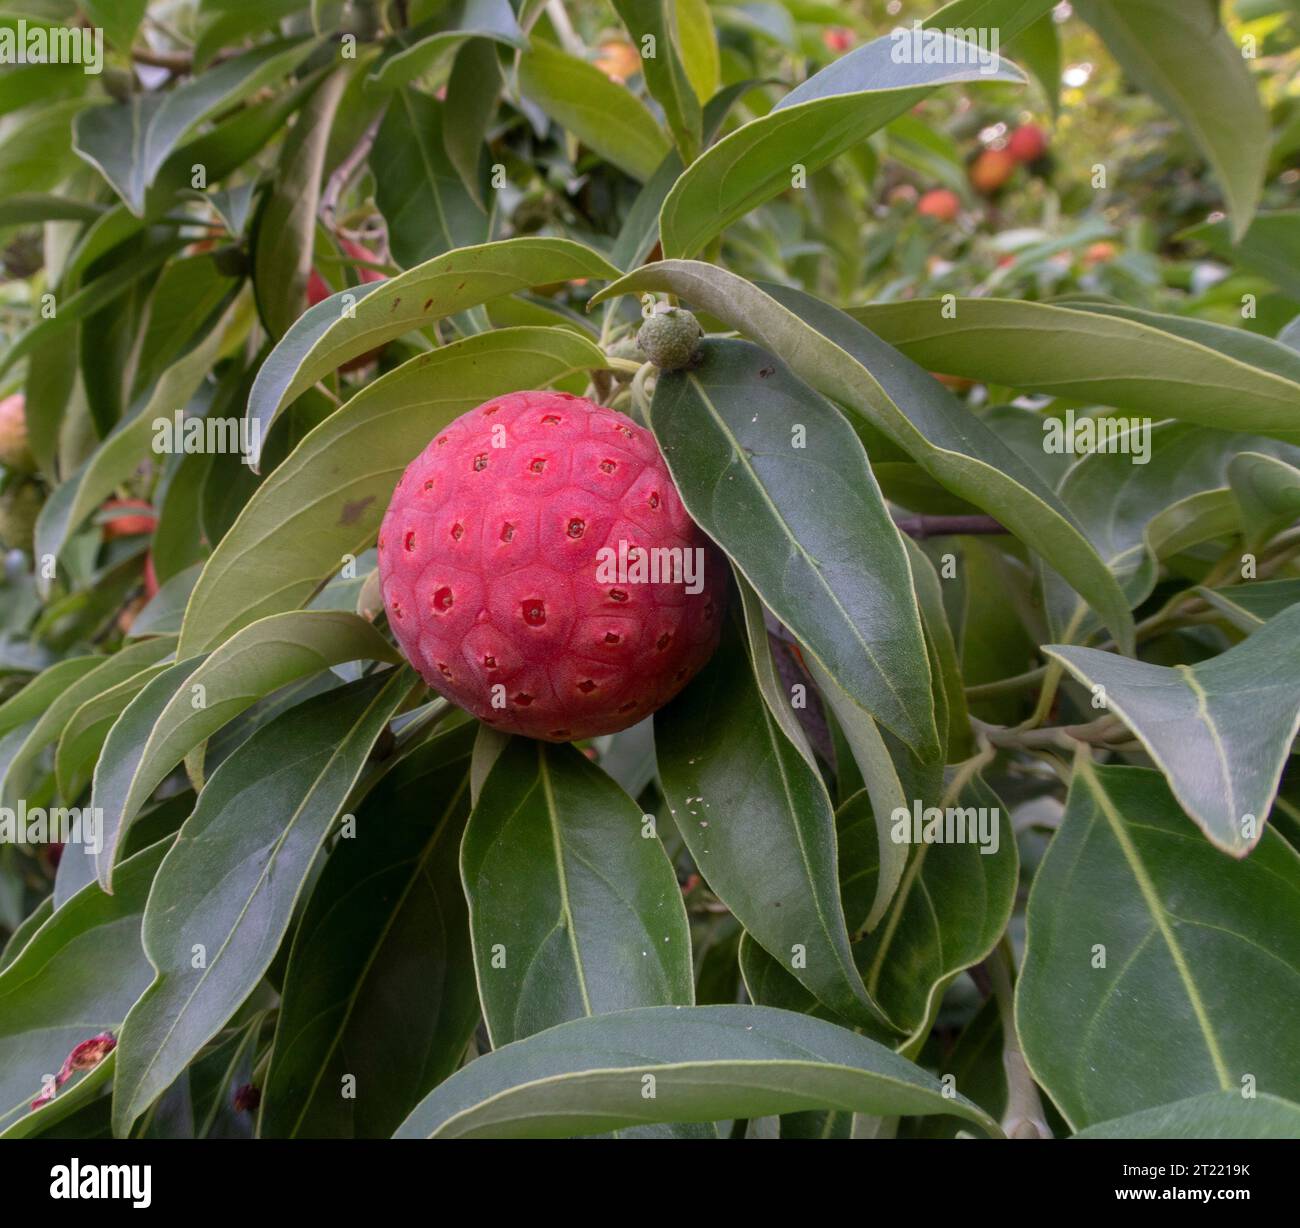 Fruits rouges orangés de Cornus capitata - Dogwood de l'Himalaya, poussant dans un jardin du Devon. Fruits comestibles, cerise de maïs Banque D'Images